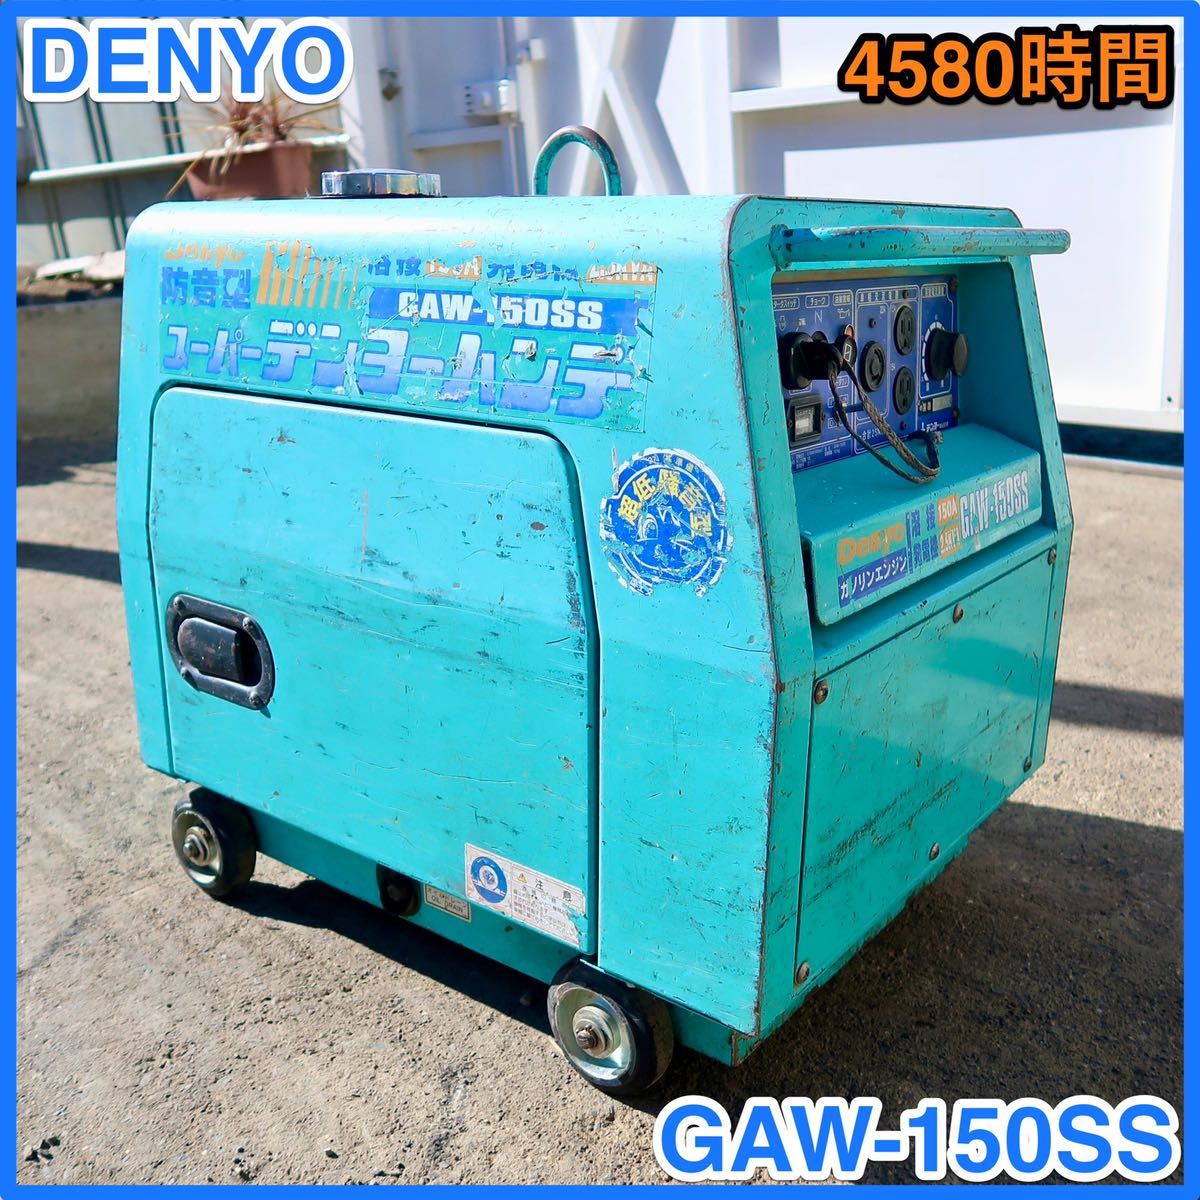 ★ 中古 DENYO 防音型エンジン発電機兼用溶接機GAW-150SS ★☆ 4580時間